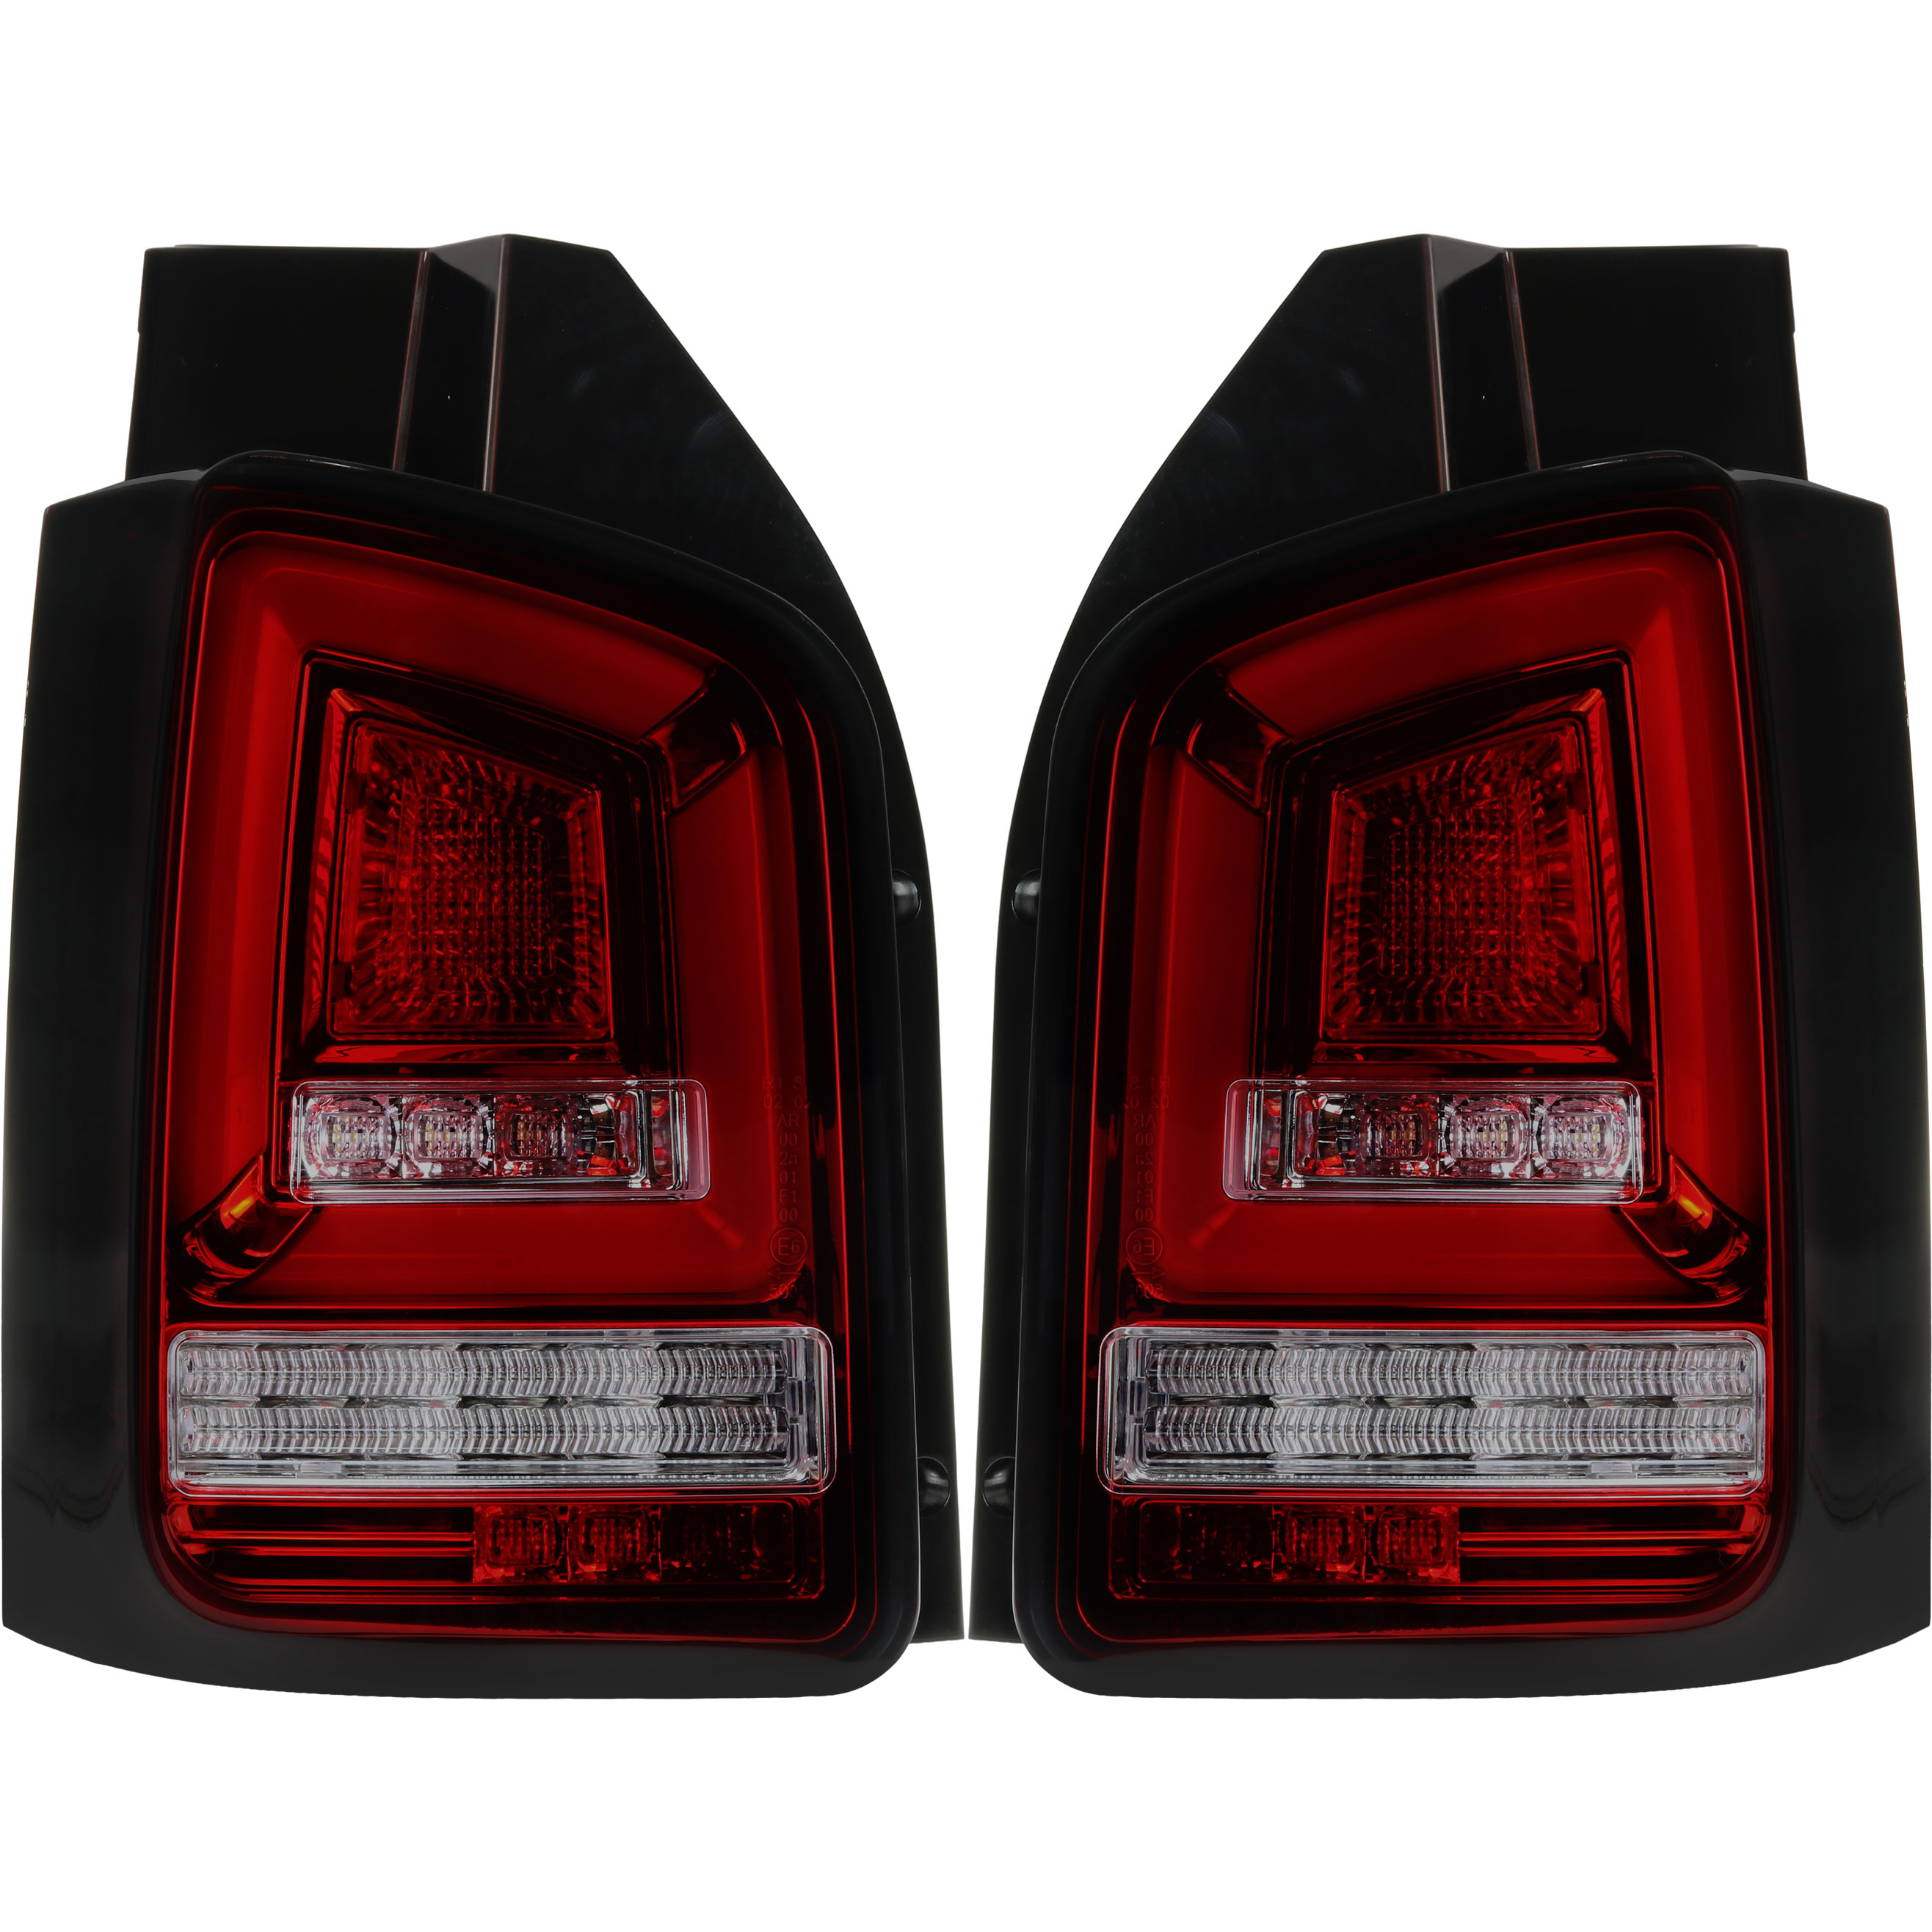 Rückleuchten Set LED Lightbar für VW T5 Bj. 09-15 rot schwarz für Heckklappe